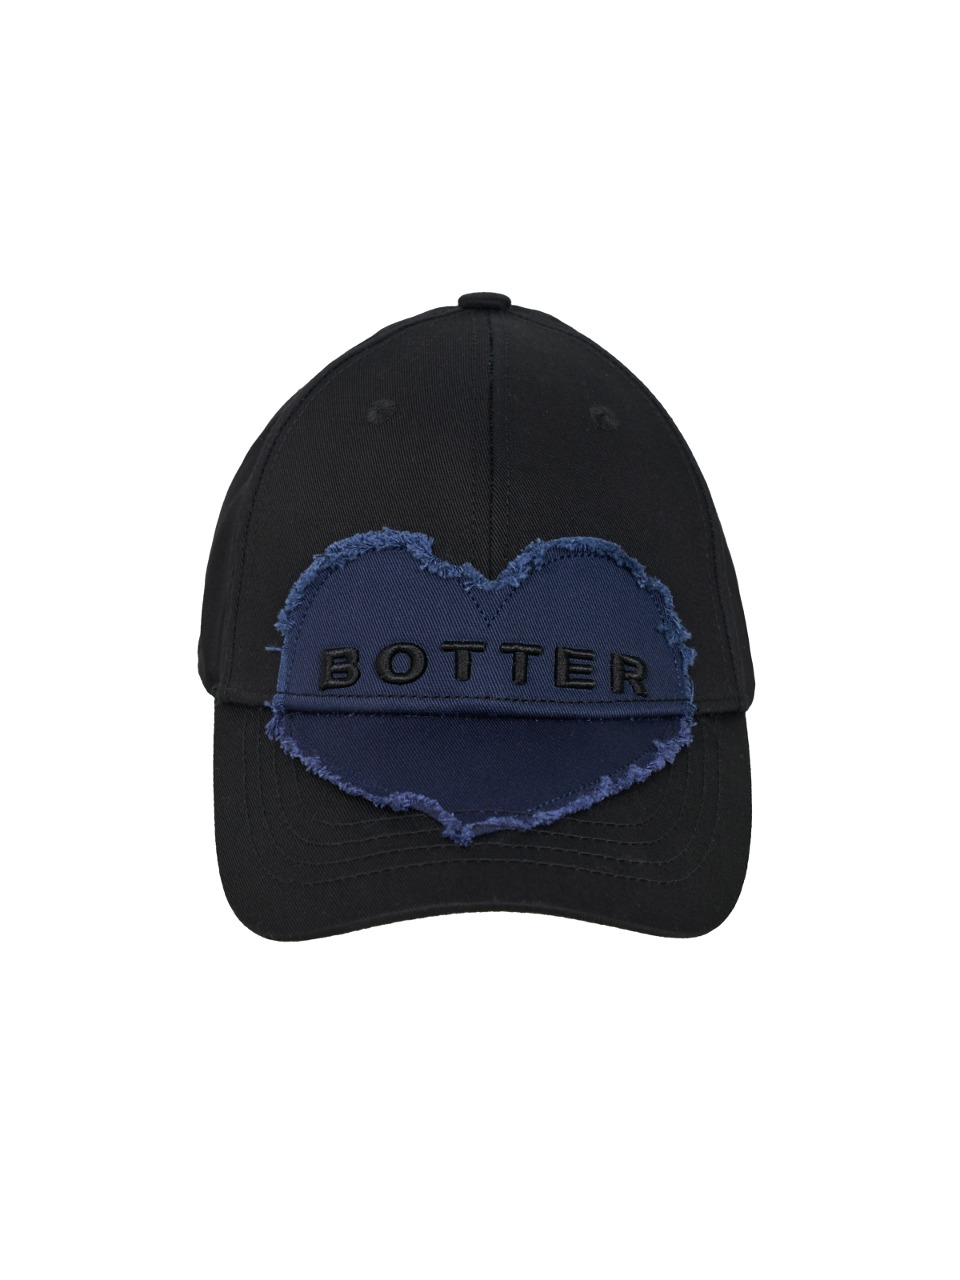 BOTTER - BOTTER CAP HEART (BLACK NAVY)